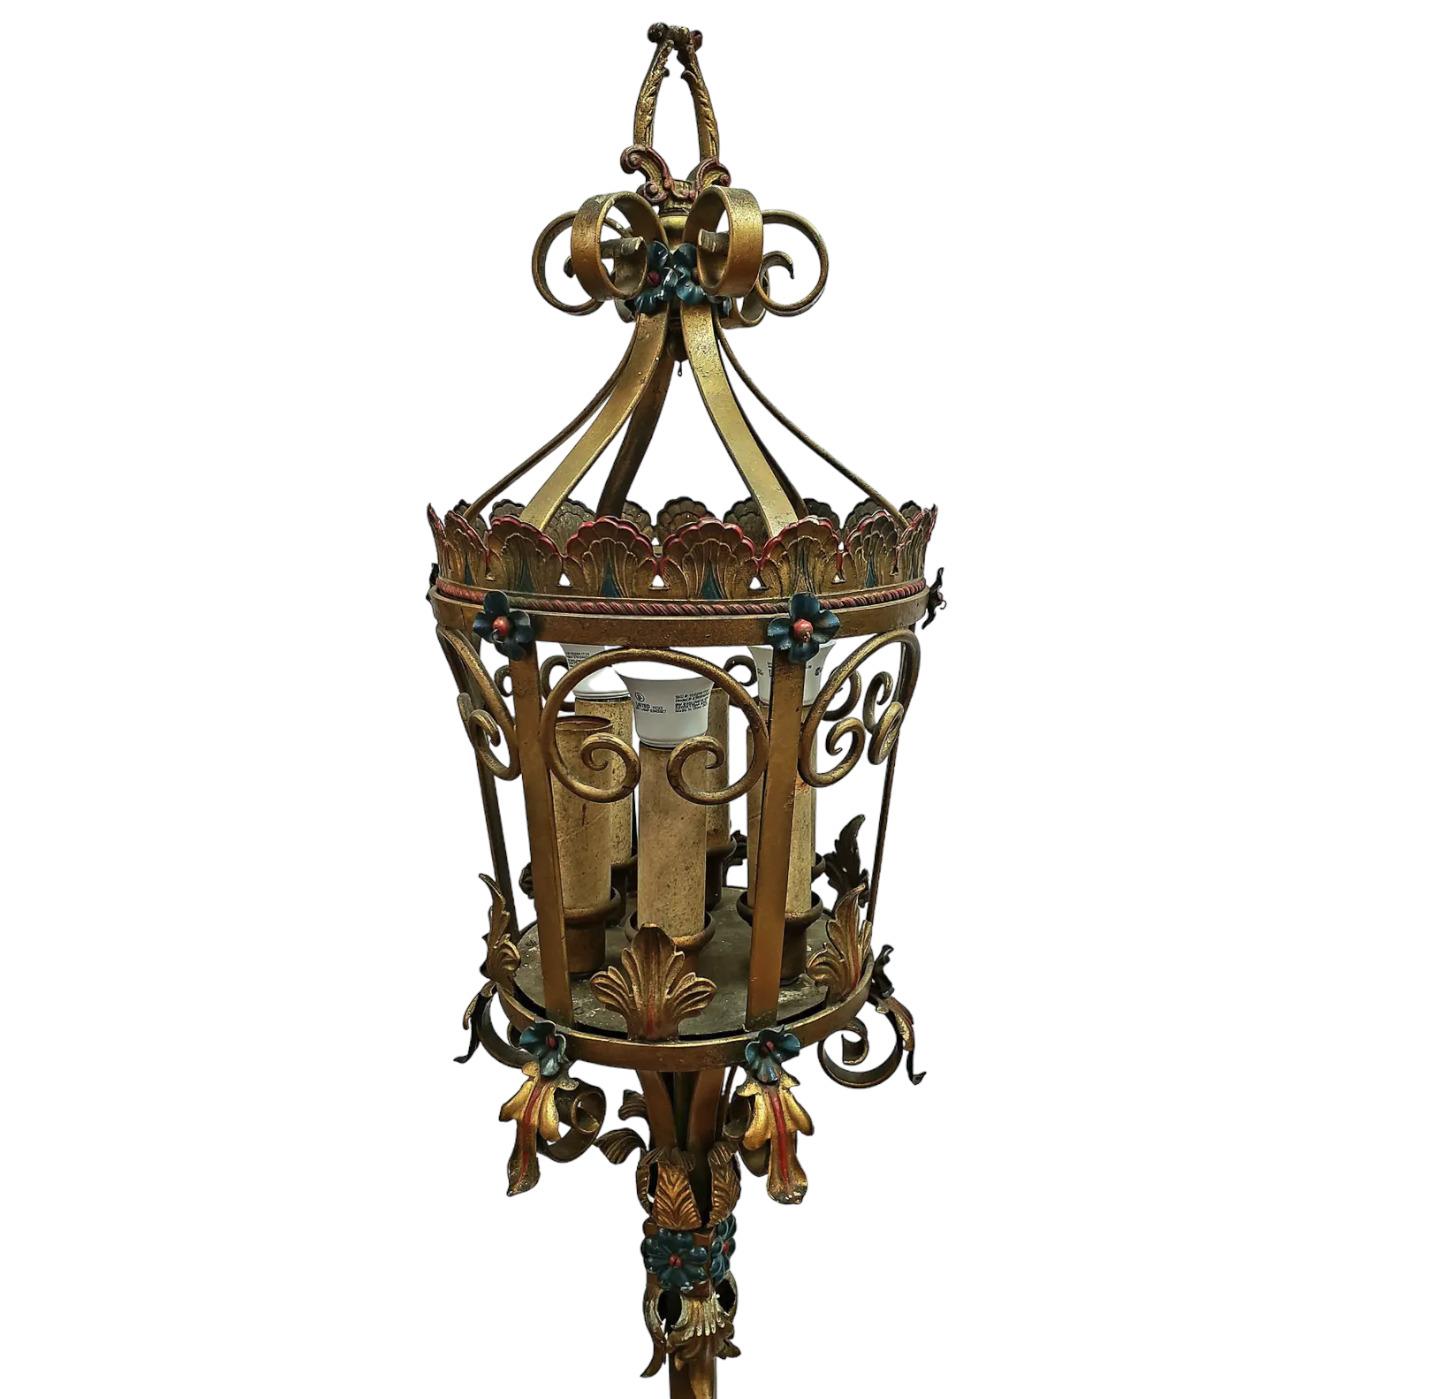 Magnifique paire de lanternes vénitiennes italiennes du XIXe siècle. Forgées à la main en fer forgé, les lanternes sont ornées de feuilles d'acanthe et de fleurs, soutenues par un poteau central en corde torsadée, ancré à une base ronde lourde.